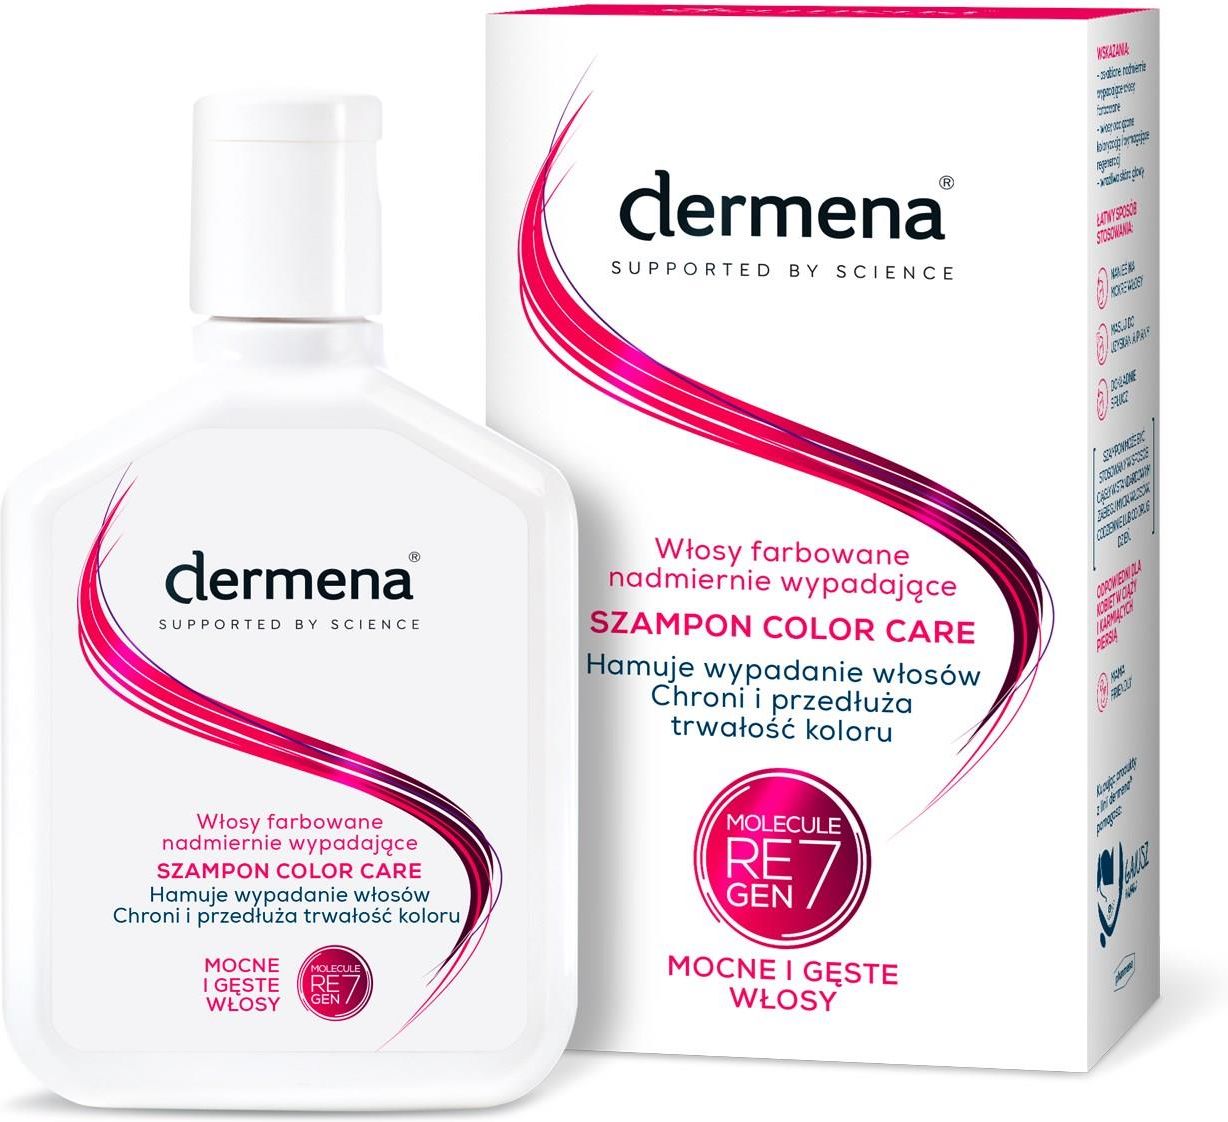 dermena plus szampon wizaz